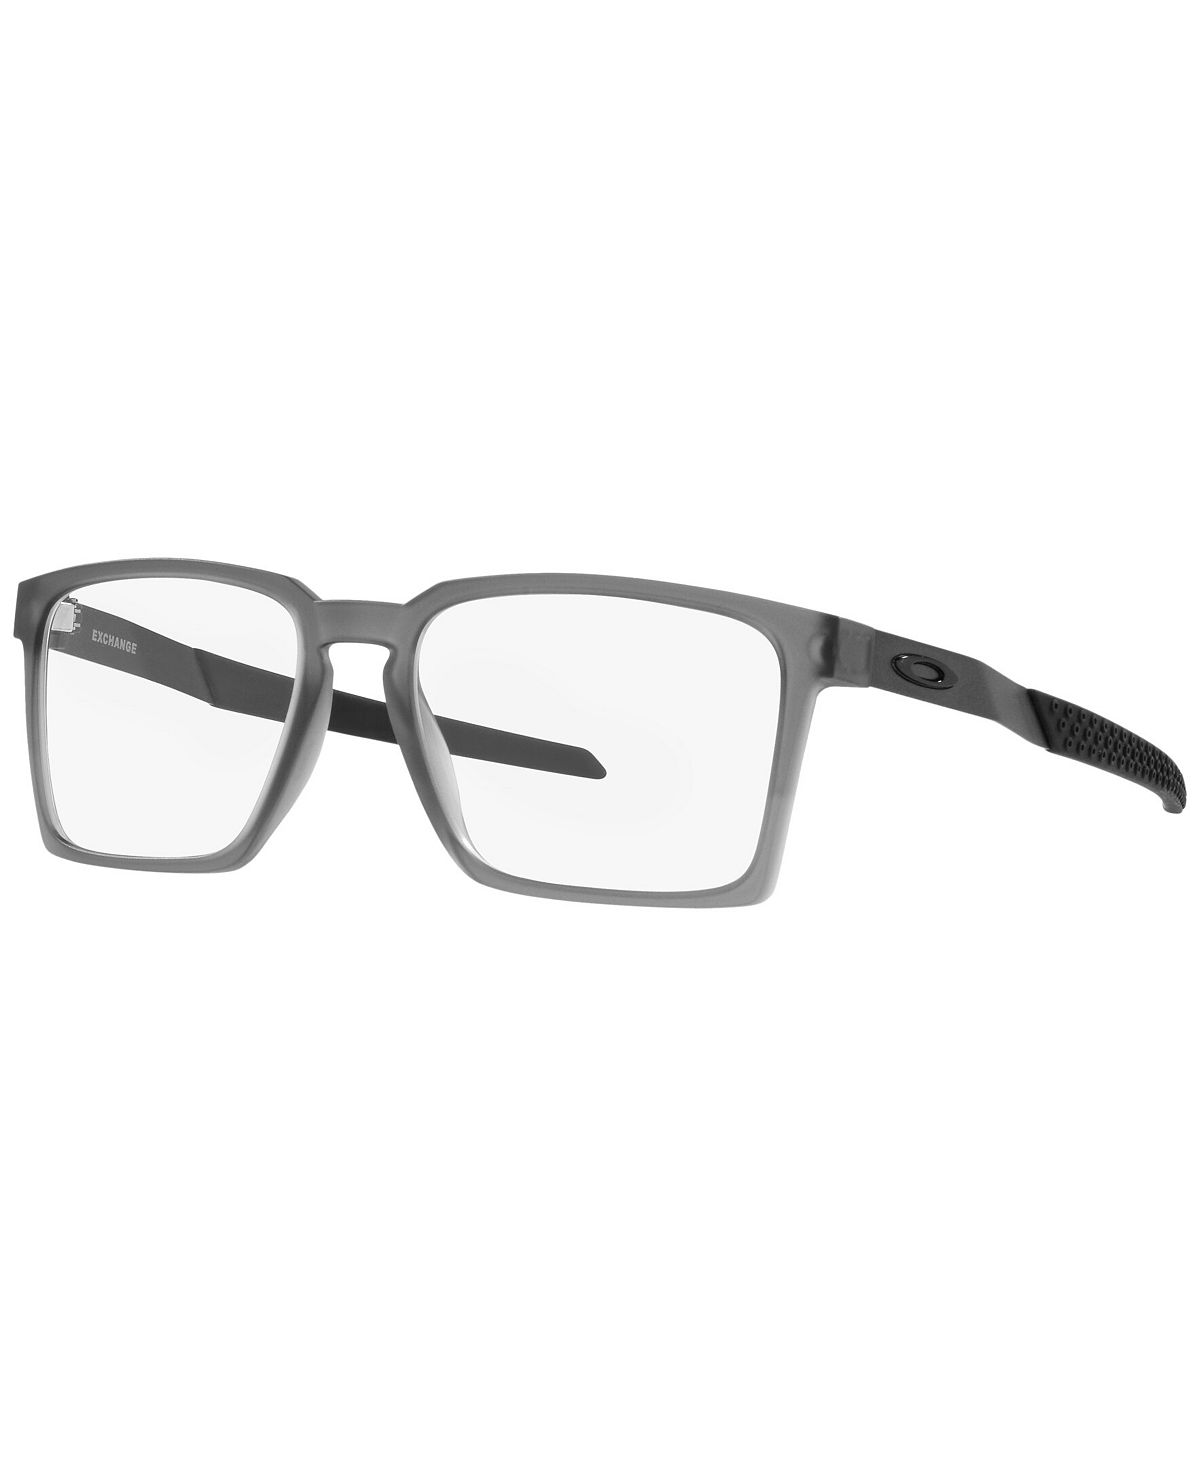 OX8055 Exchange Мужские прямоугольные очки Oakley